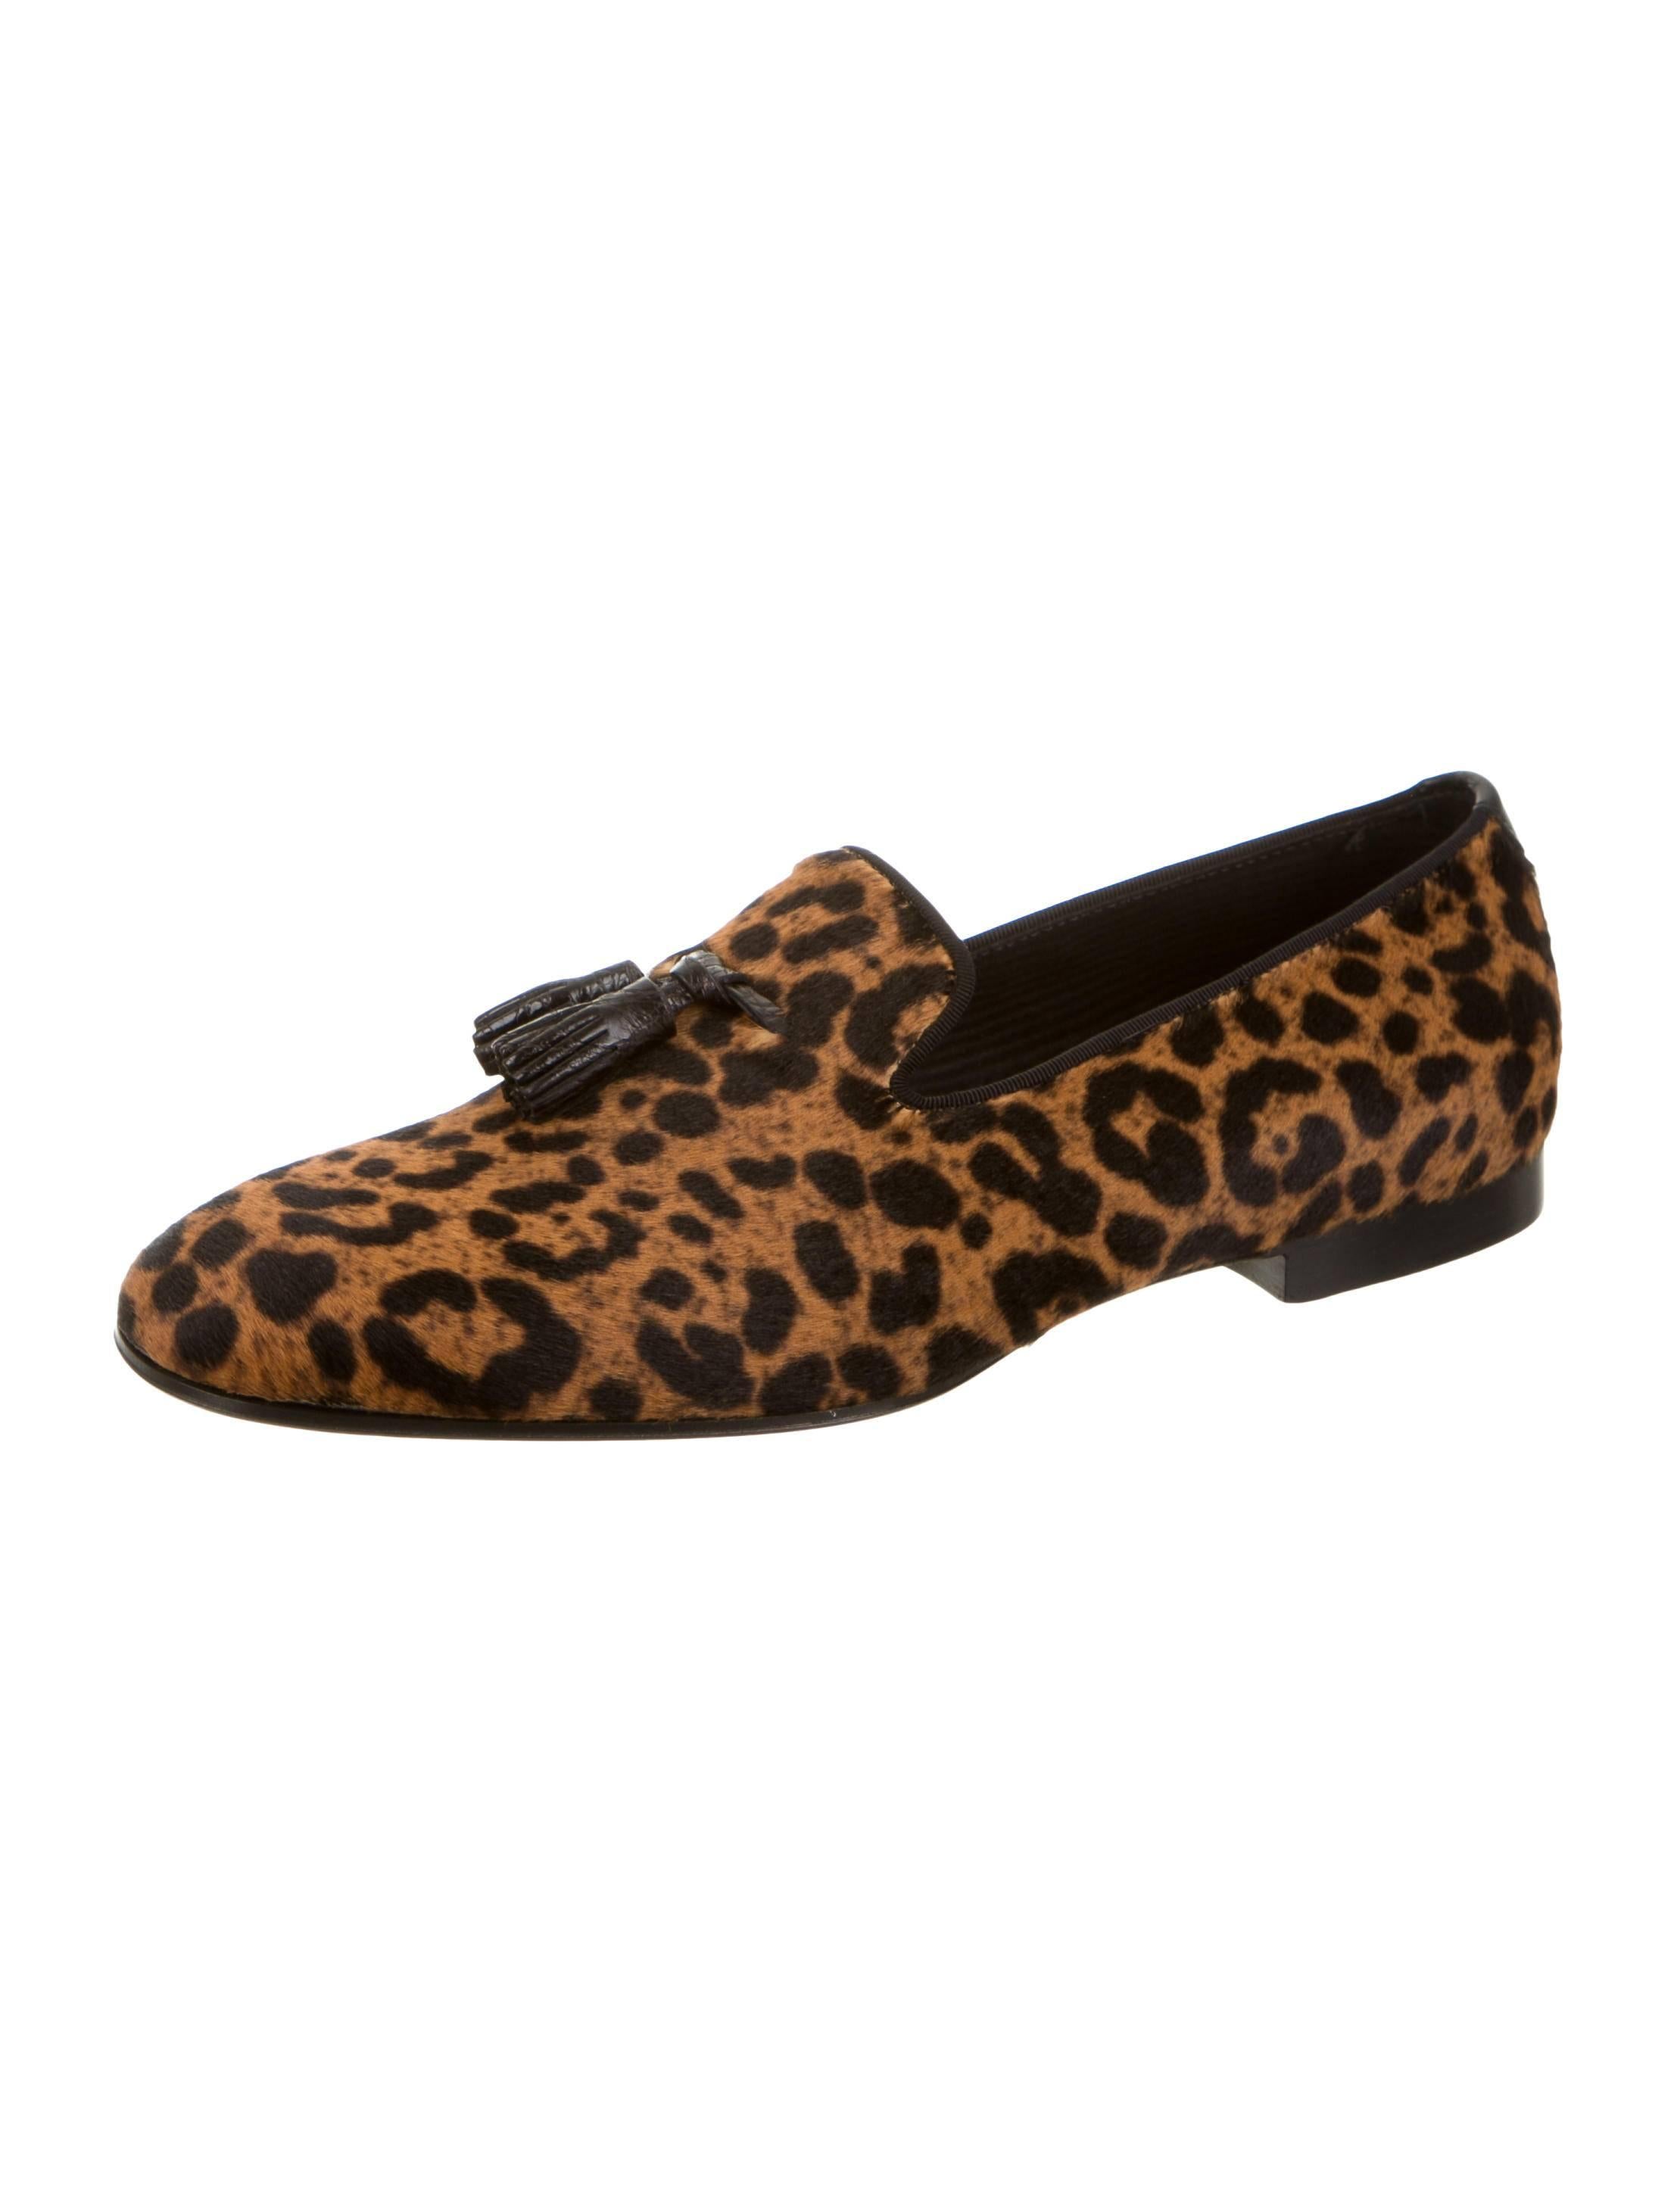 mens leopard shoes